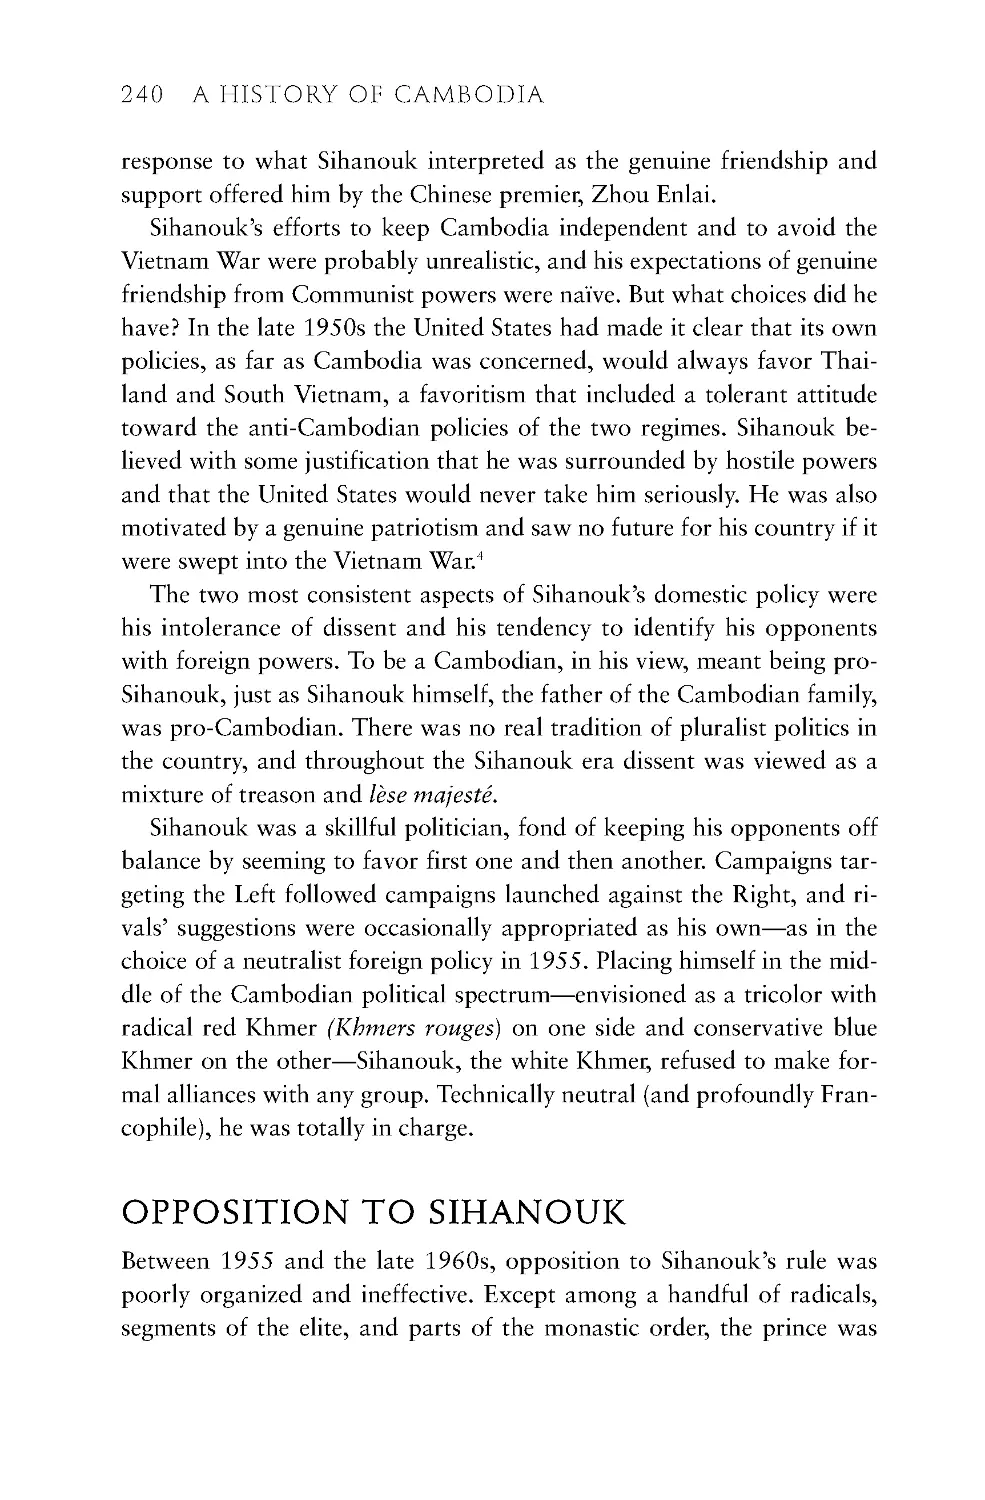 Opposition to Sihanouk